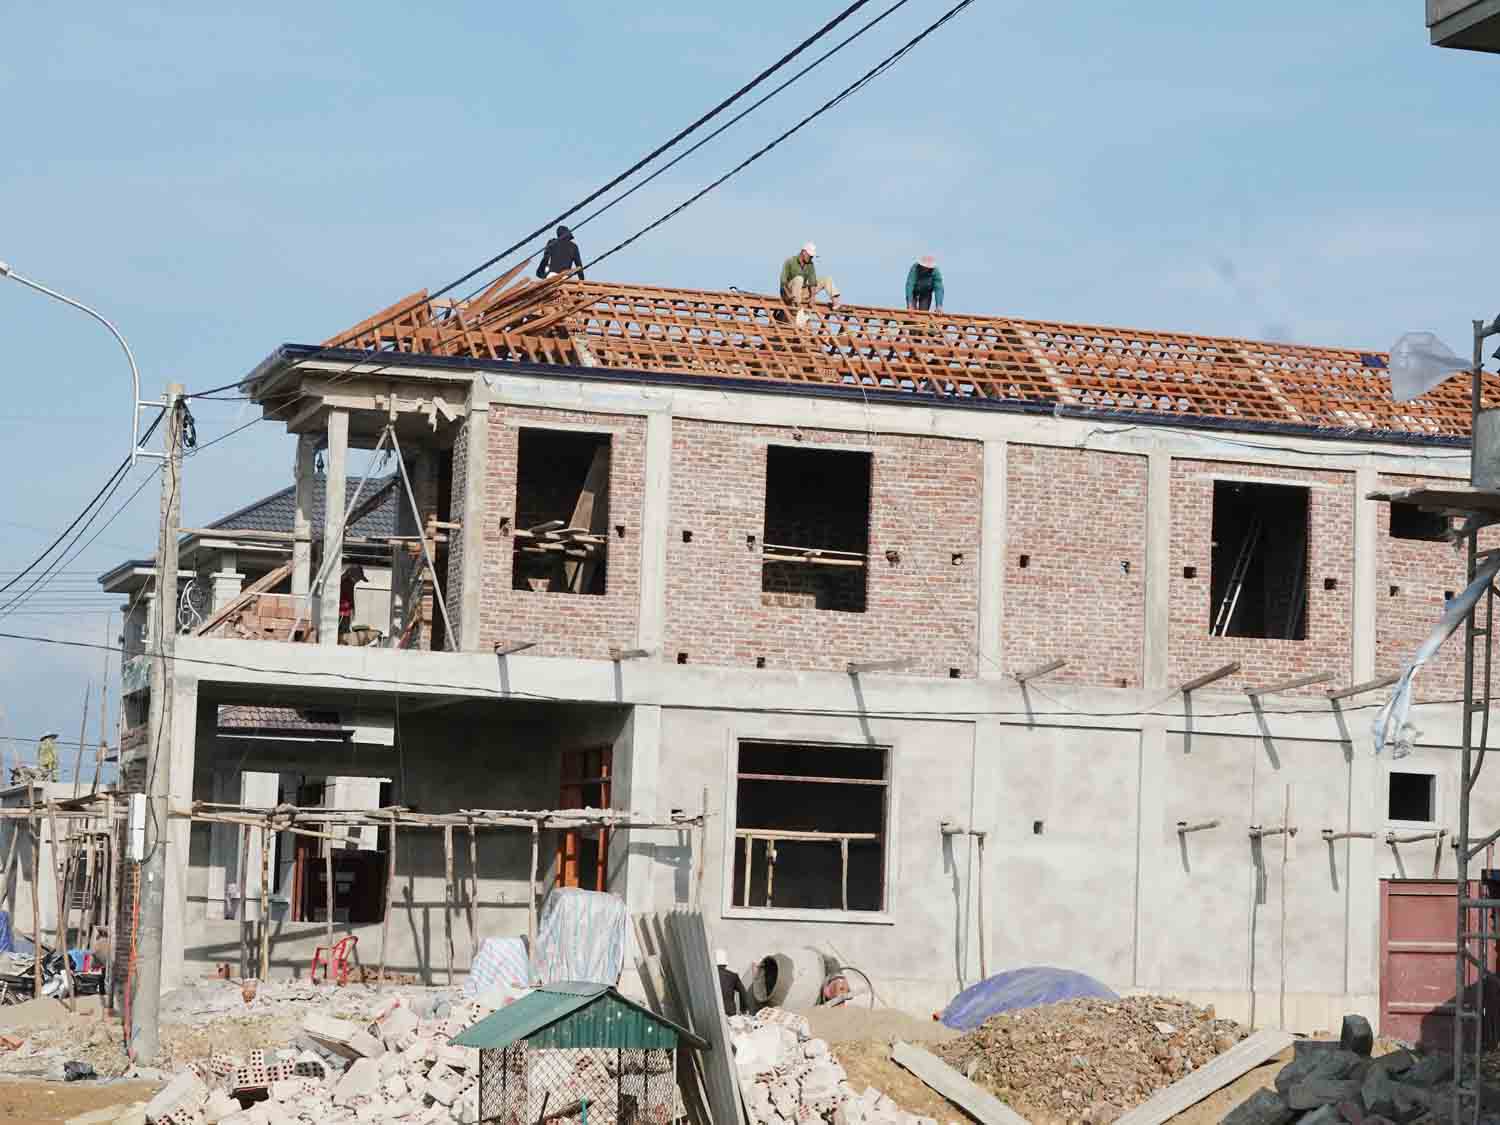 Người dân đang xây dựng nhà tại khu tái định cư cao tốc Bắc - Nam thuộc xã Kim Song Trường, huyện Can Lộc, tỉnh Hà Tĩnh. Ảnh: Trần Tuấn.